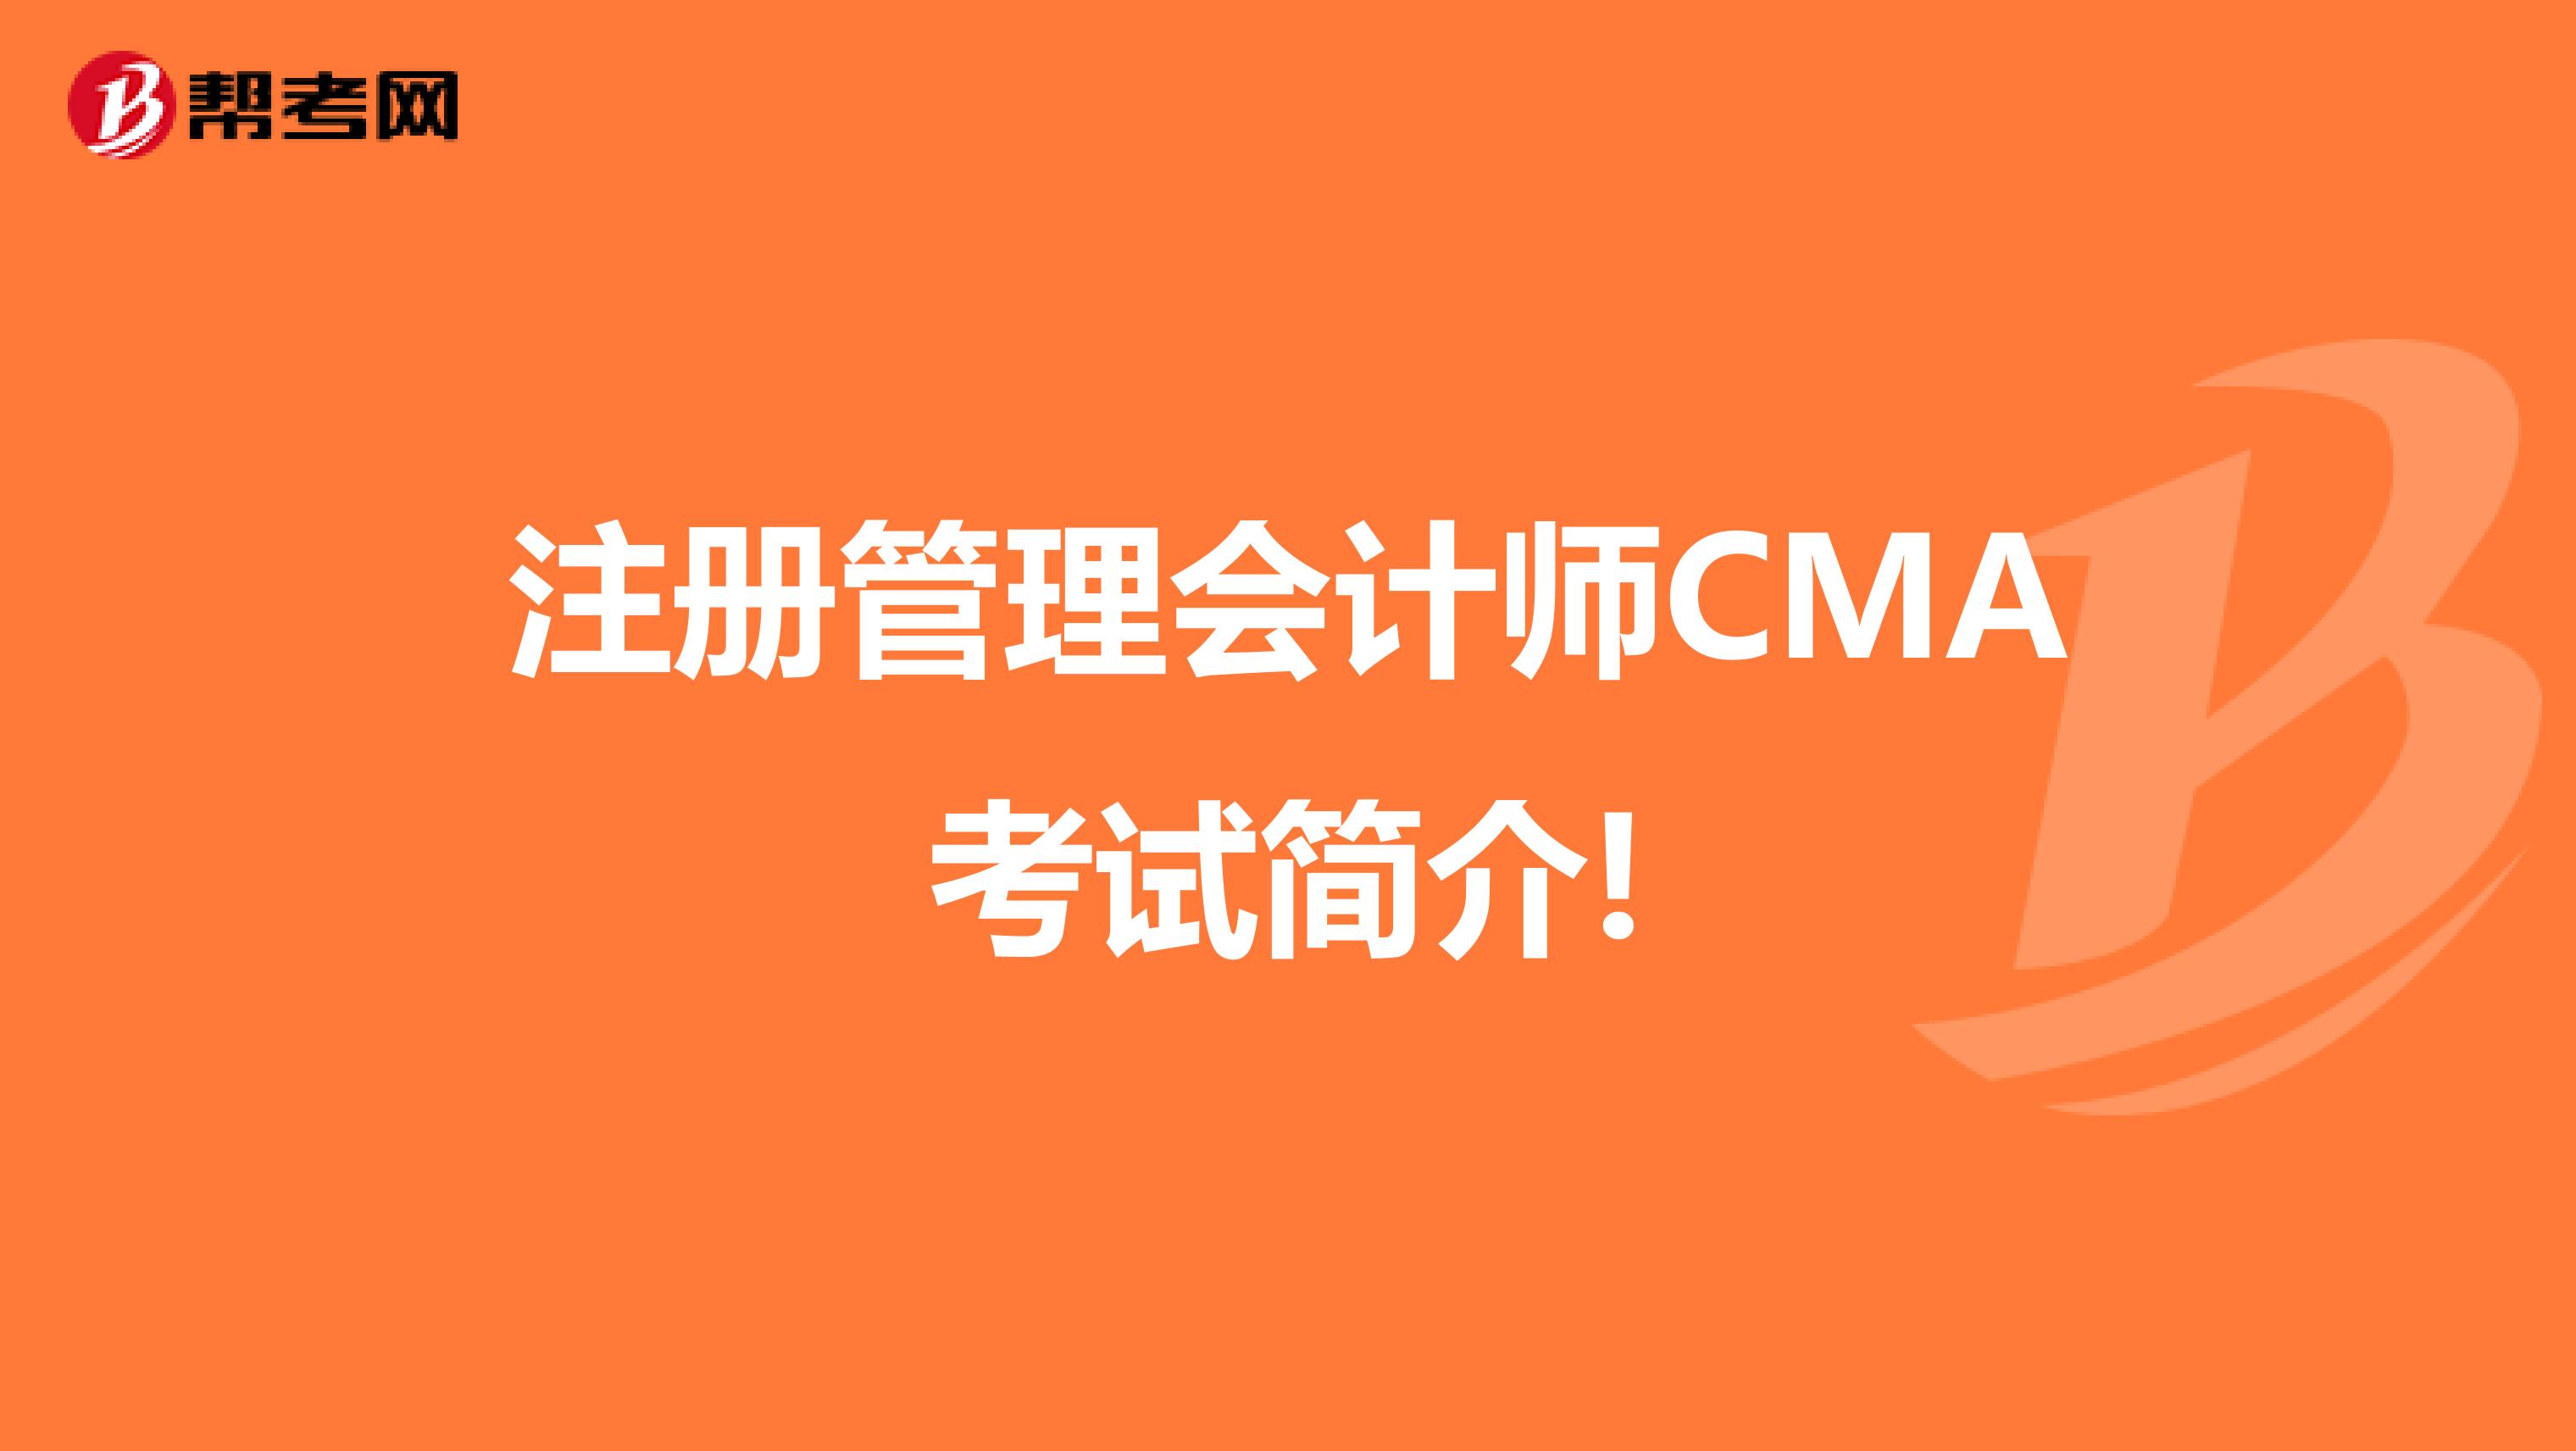 注册管理会计师CMA考试简介!